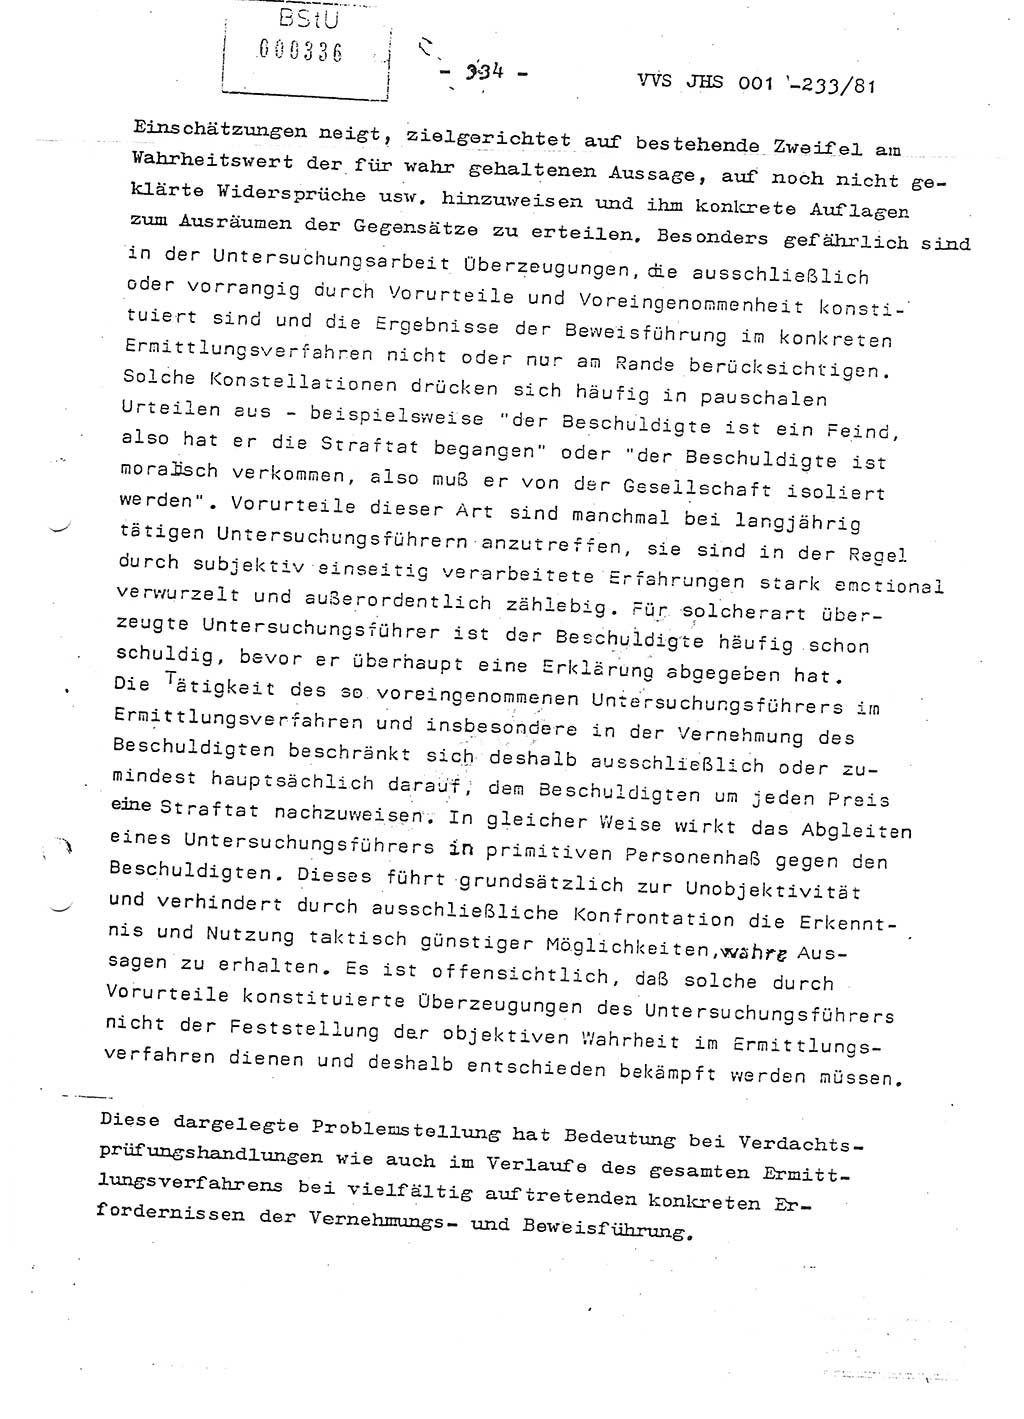 Dissertation Oberstleutnant Horst Zank (JHS), Oberstleutnant Dr. Karl-Heinz Knoblauch (JHS), Oberstleutnant Gustav-Adolf Kowalewski (HA Ⅸ), Oberstleutnant Wolfgang Plötner (HA Ⅸ), Ministerium für Staatssicherheit (MfS) [Deutsche Demokratische Republik (DDR)], Juristische Hochschule (JHS), Vertrauliche Verschlußsache (VVS) o001-233/81, Potsdam 1981, Blatt 334 (Diss. MfS DDR JHS VVS o001-233/81 1981, Bl. 334)